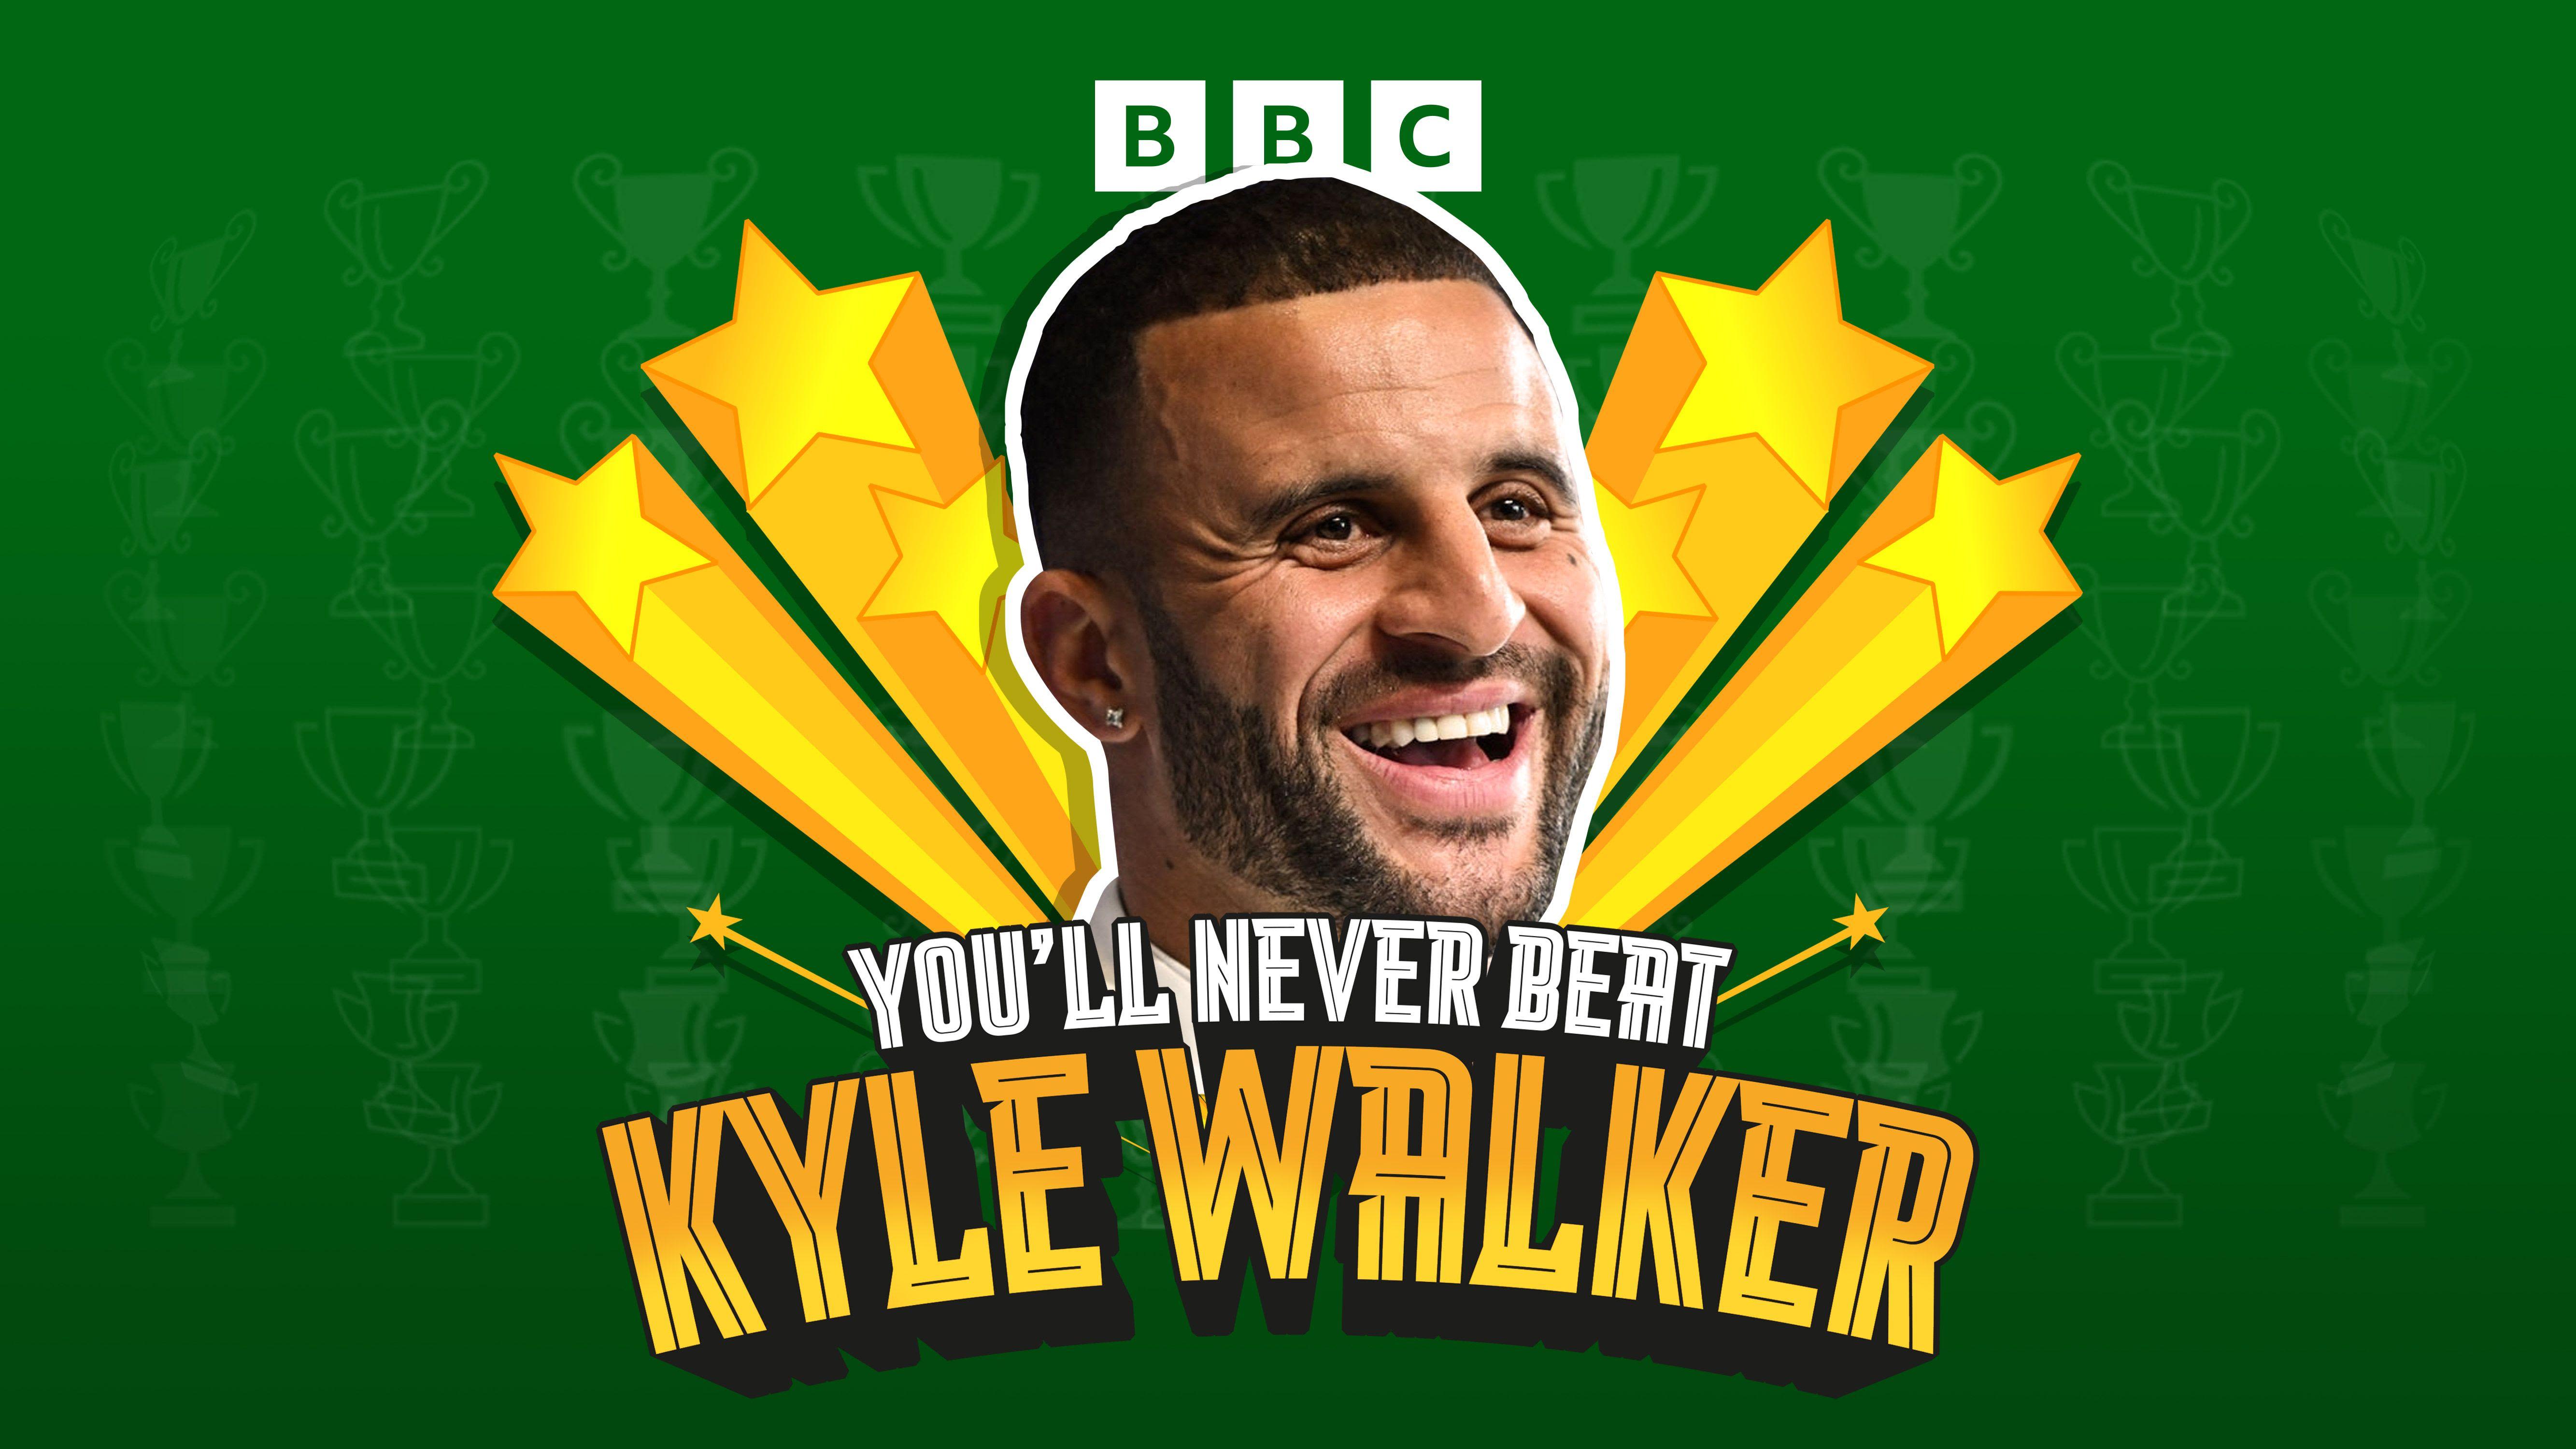 Latest Kyle Walker podcast episode drops